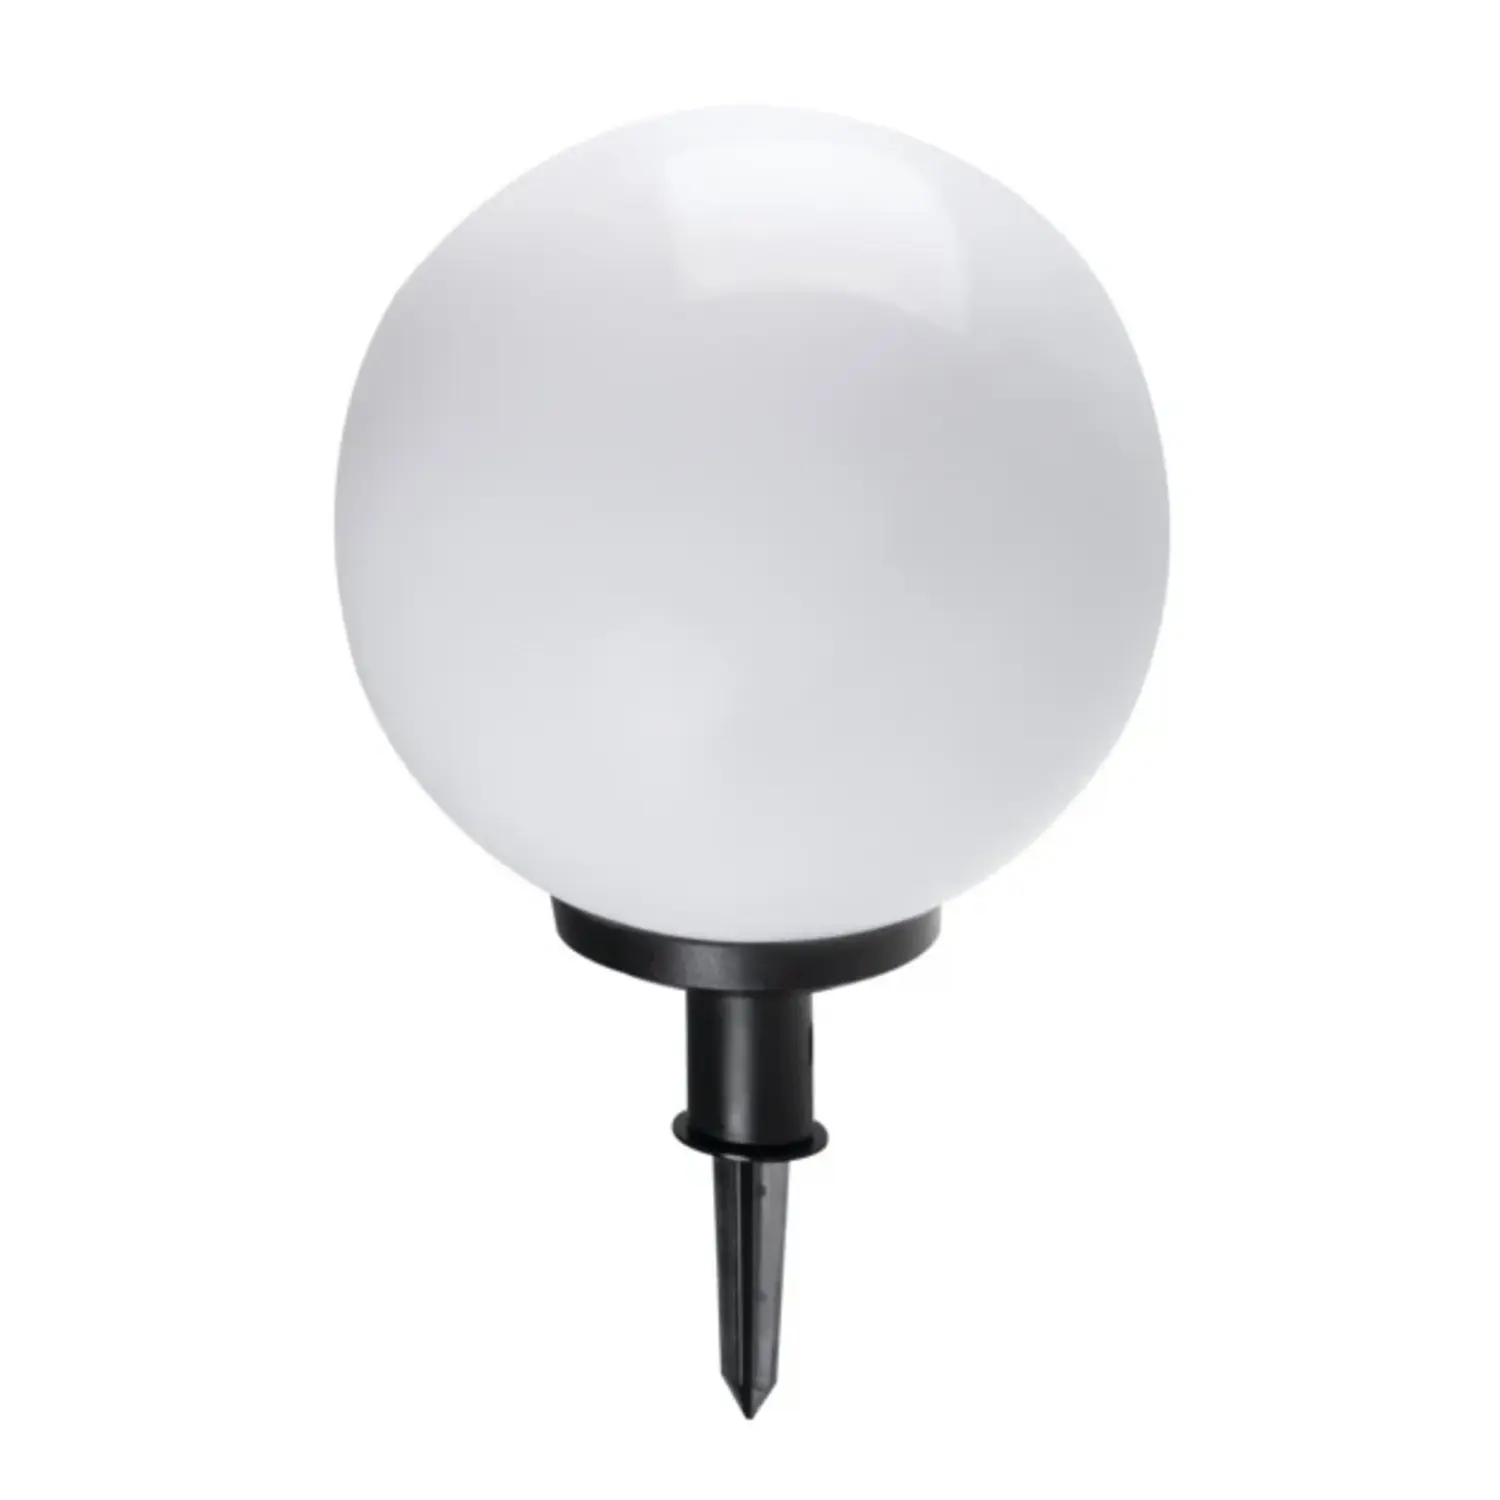 immagine lampada da giardino globo con picchetto IP44 esterno E27 CE bianco 470 mm 220-240 volt kan 23512